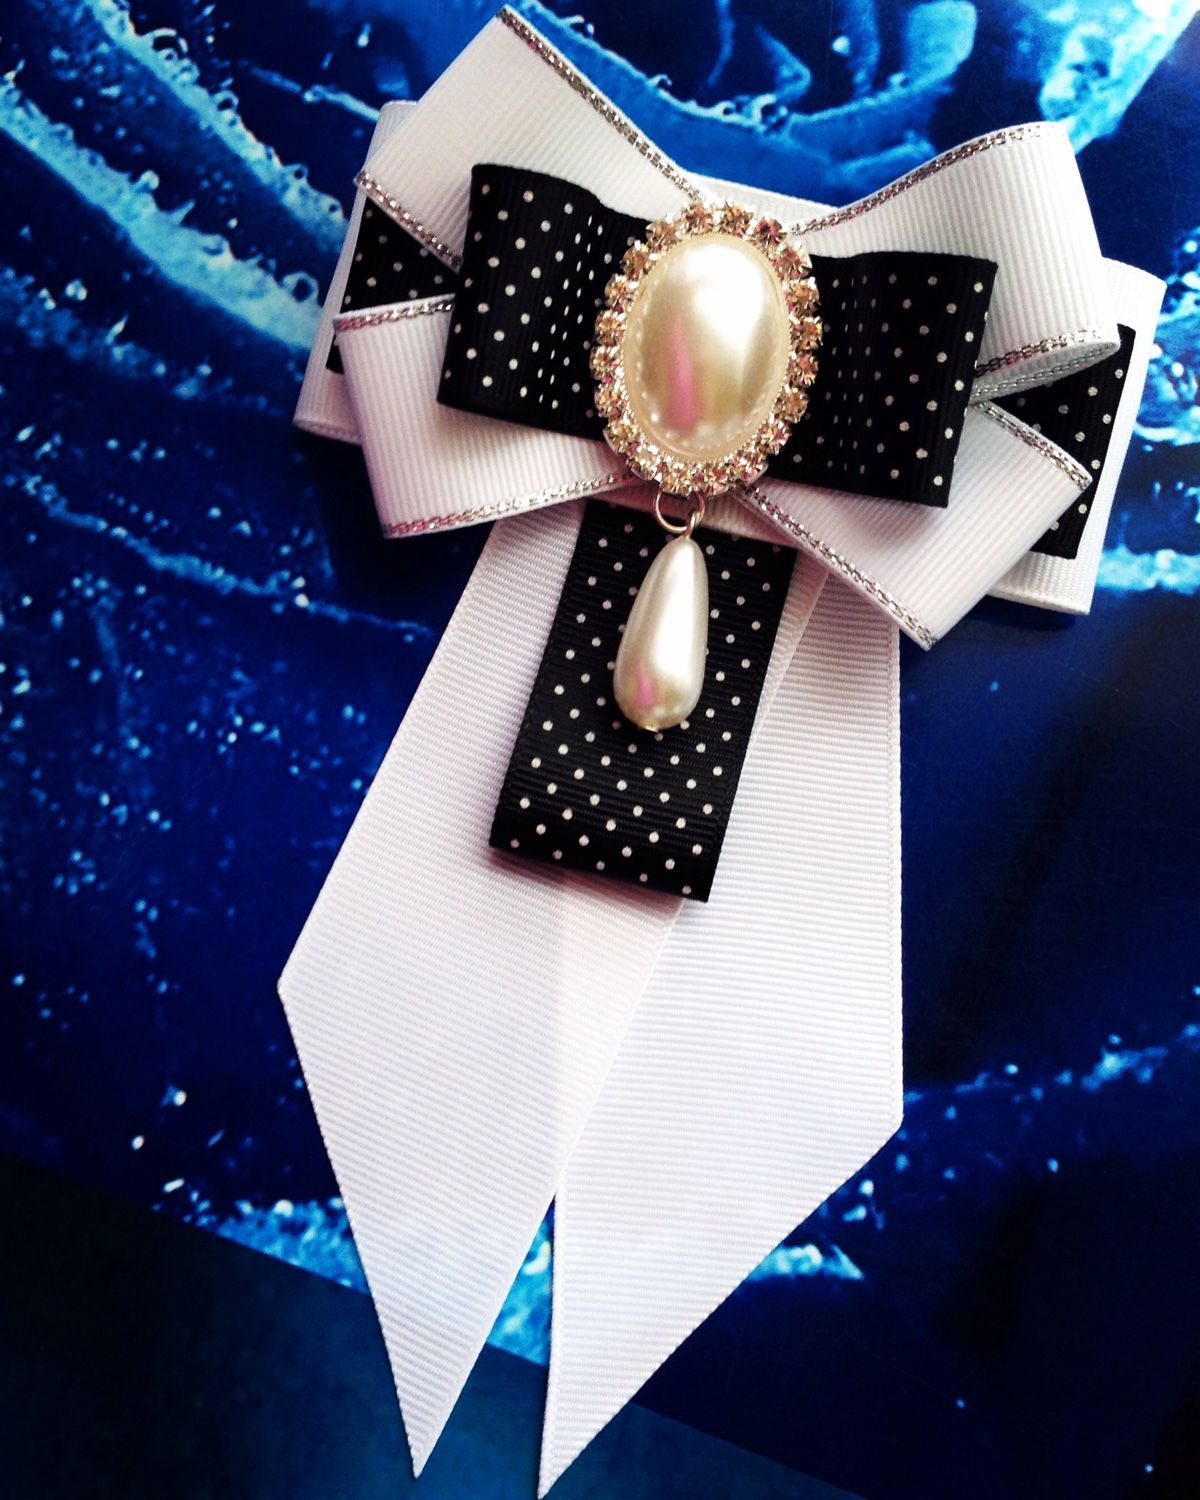 Брошь галстук из лент своими руками: Галстук-брошь в стиле канзаши из лент своими руками для девочки к школьной форме